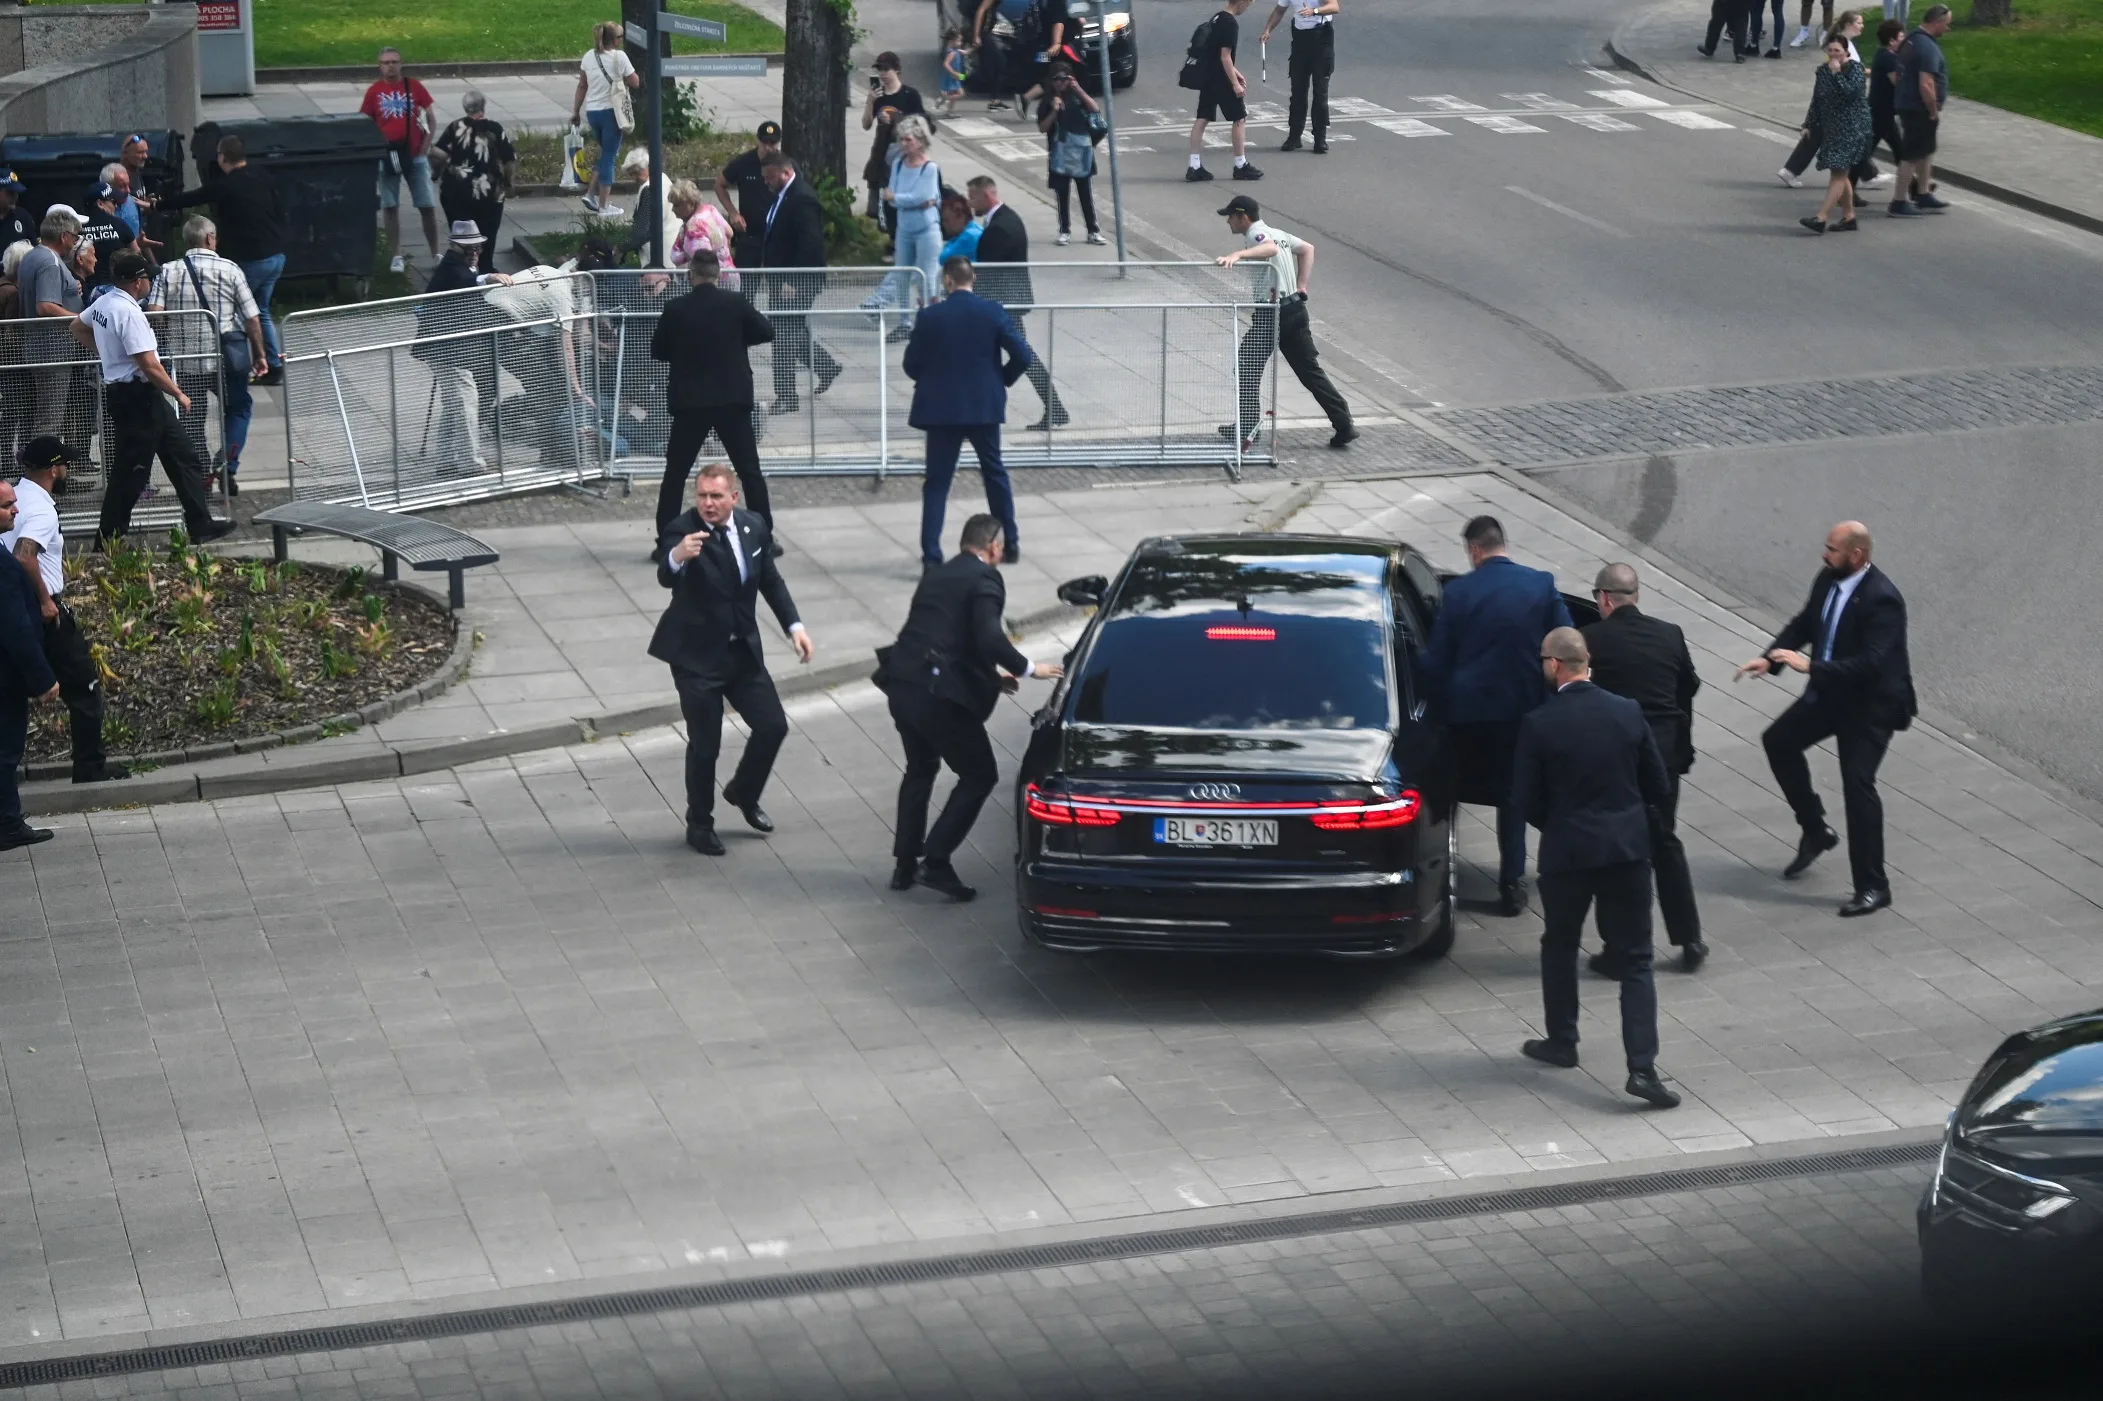 Primeiro-ministro da Eslováquia sofreu tentativa de assassinato, confirma porta-voz